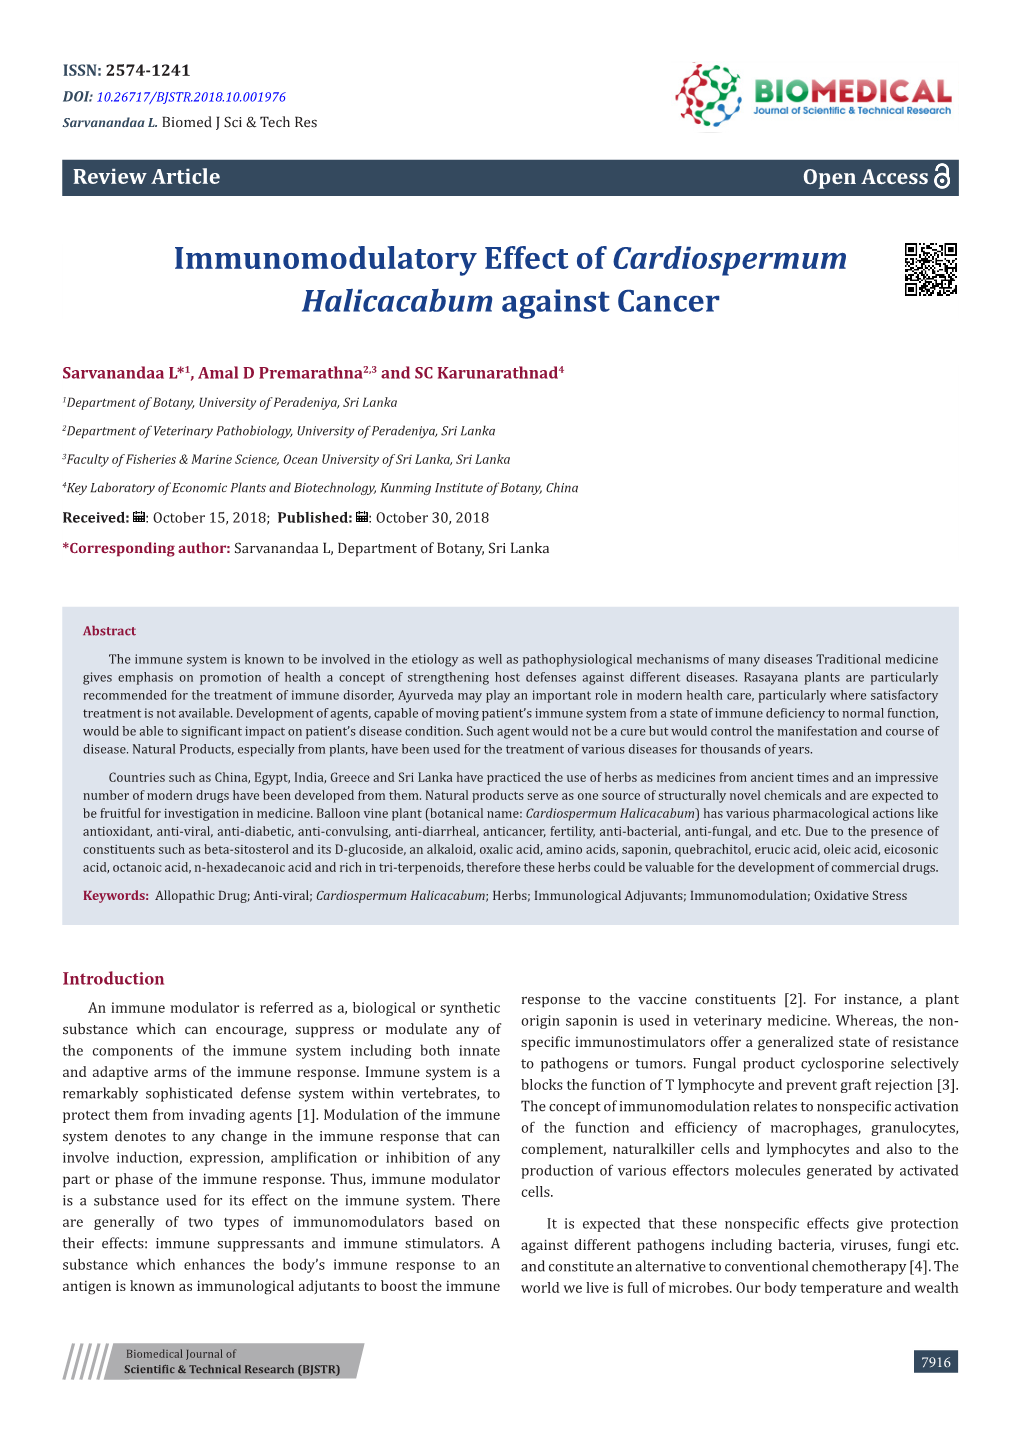 Immunomodulatory Effect of Cardiospermum Halicacabum Against Cancer